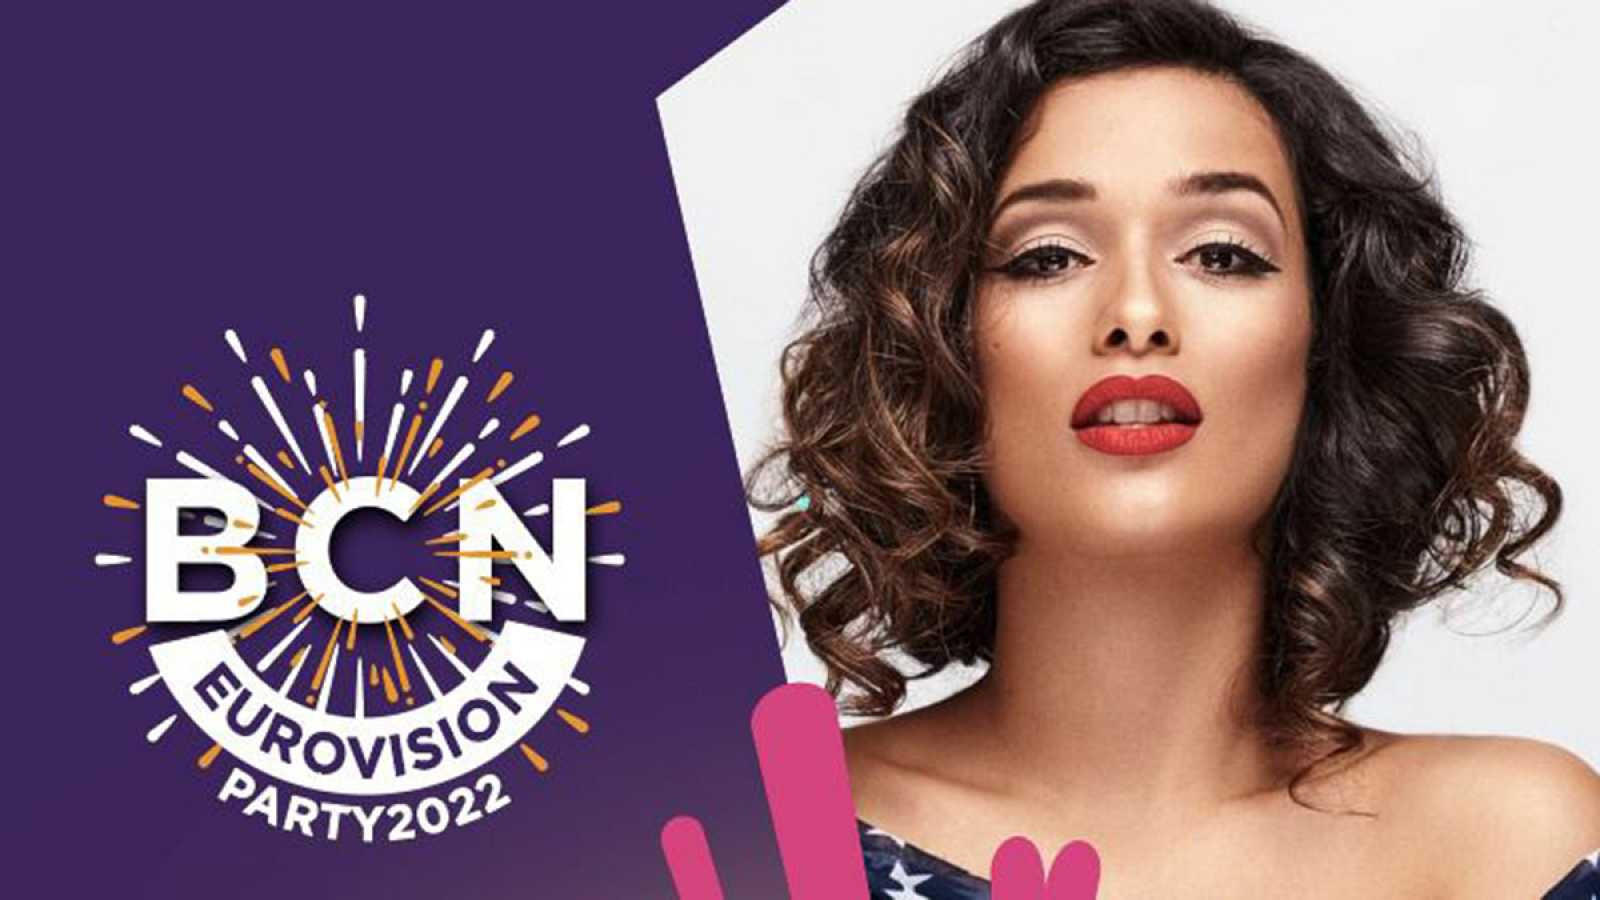 Chanel actuará en el Barcelona Eurovision Party / RTVE